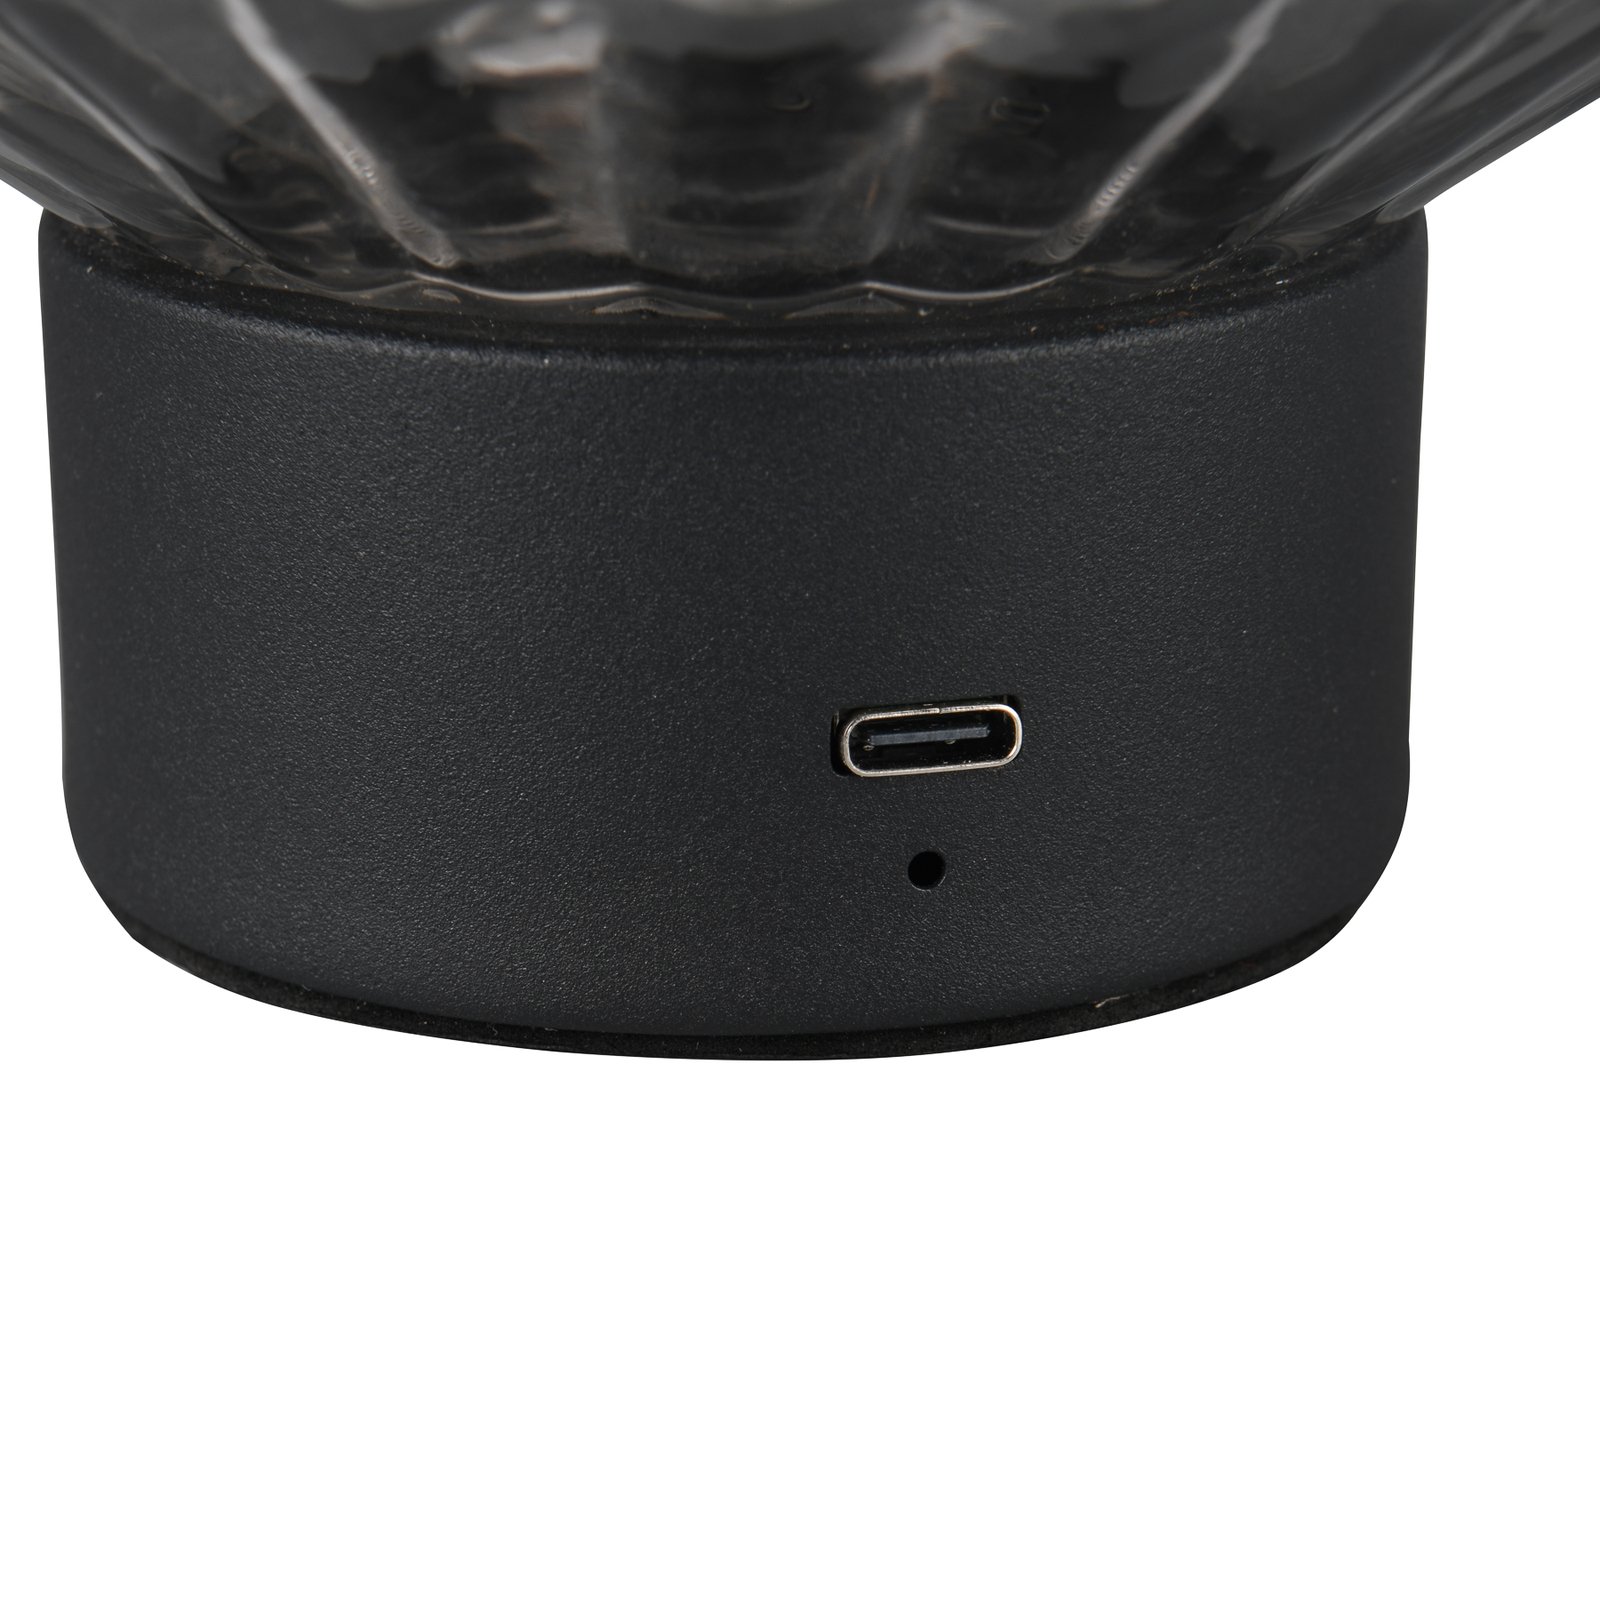 Lord LED įkraunama stalinė lempa, juoda/dūminė, aukštis 19,5 cm, stiklas